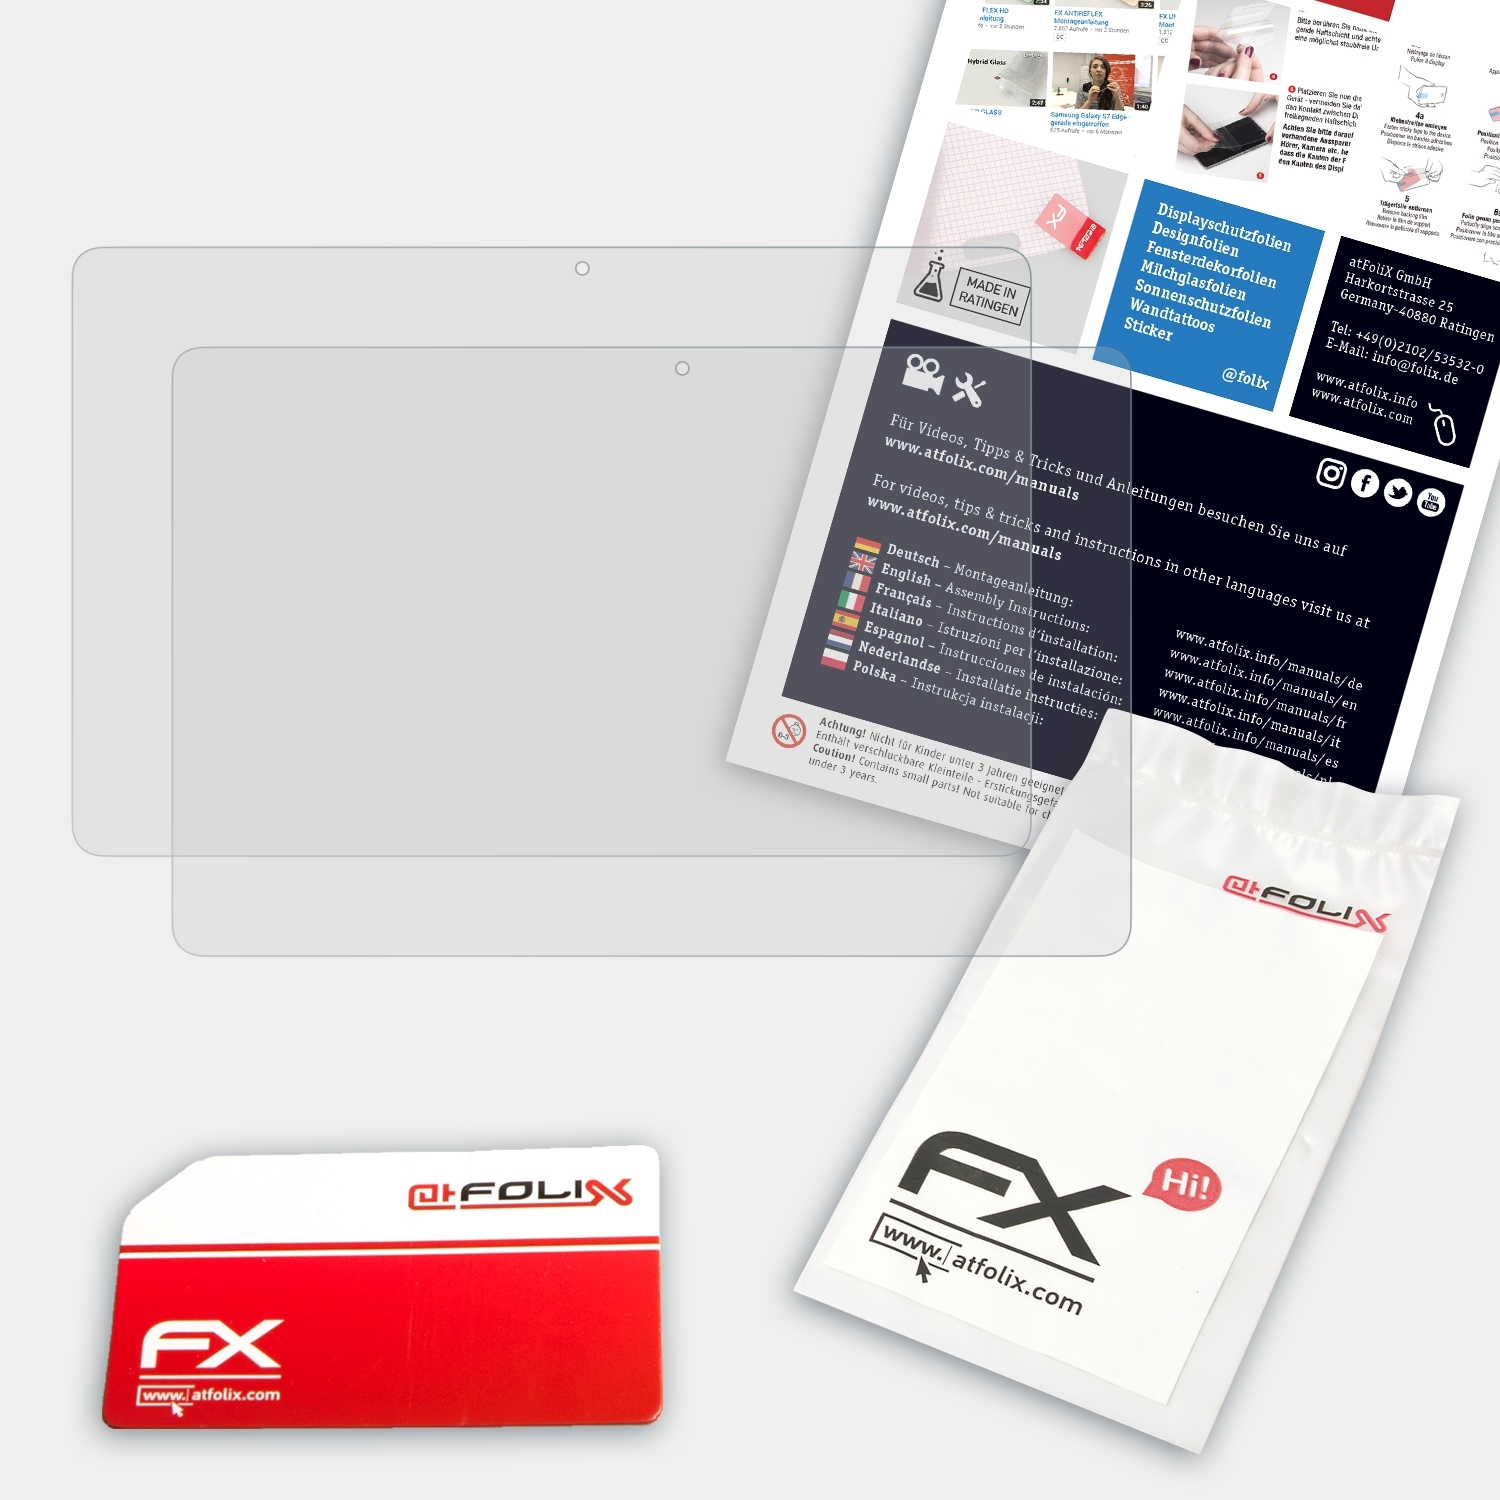 ATFOLIX 2x FX-Antireflex Displayschutz(für W1 Trekstor SurfTab Duo (Volks-Tablet))